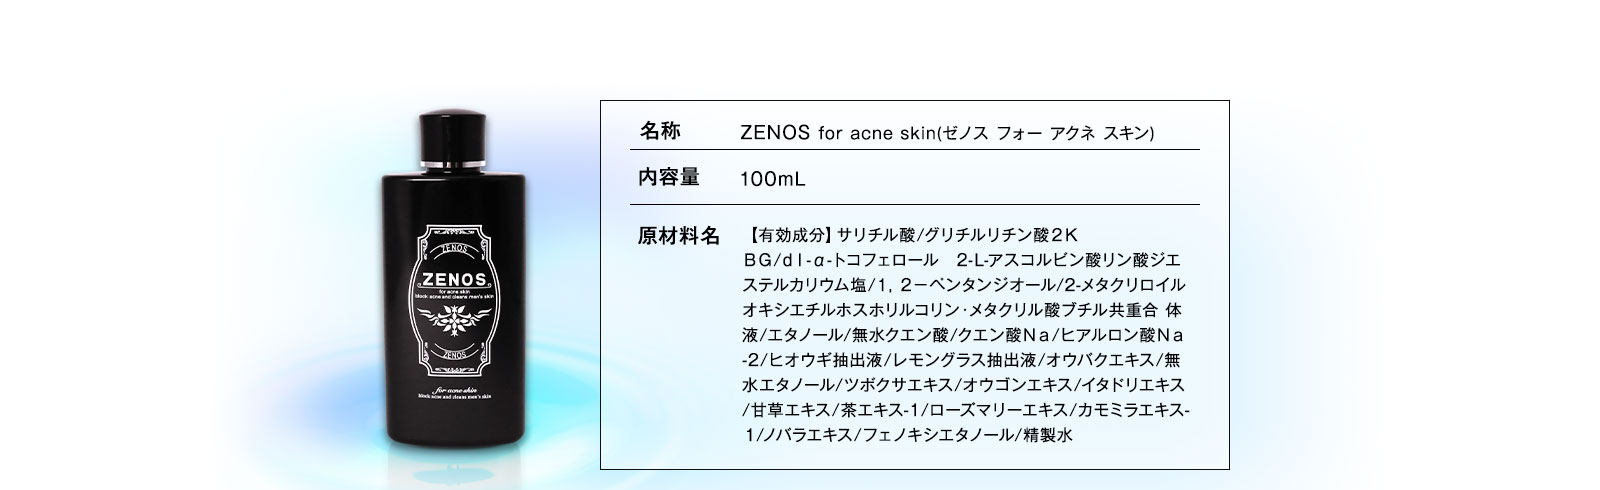 ZENOS-ゼノス-